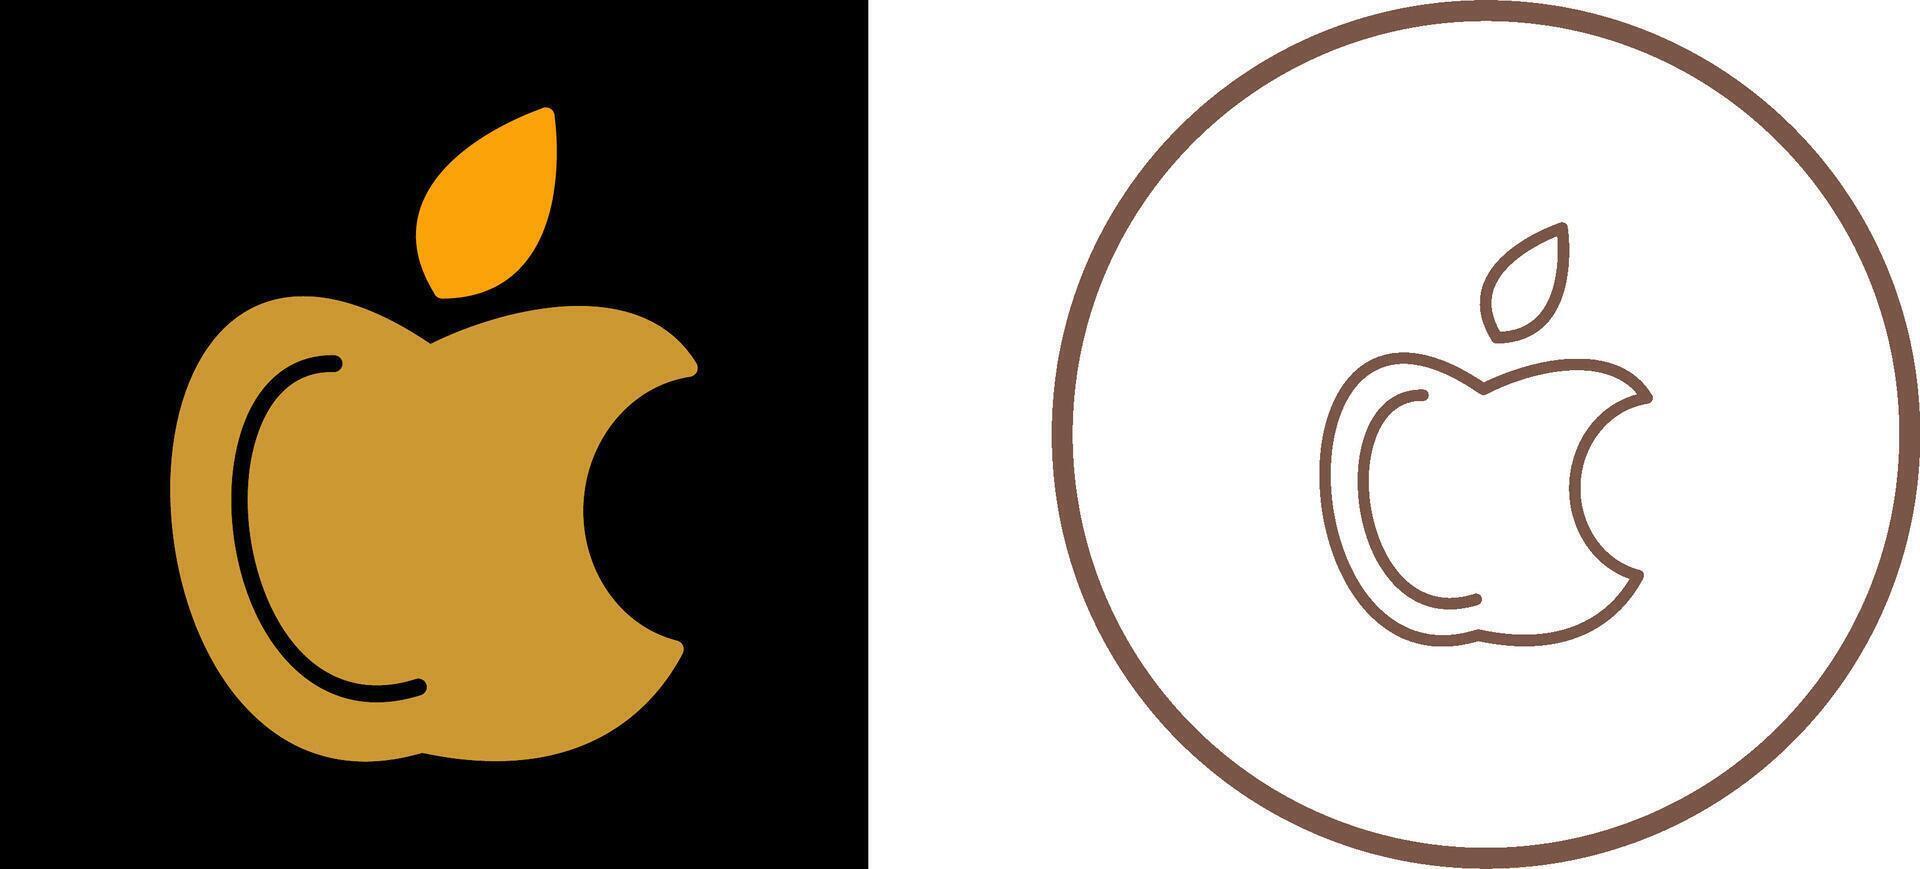 Apple Logo Vector Icon